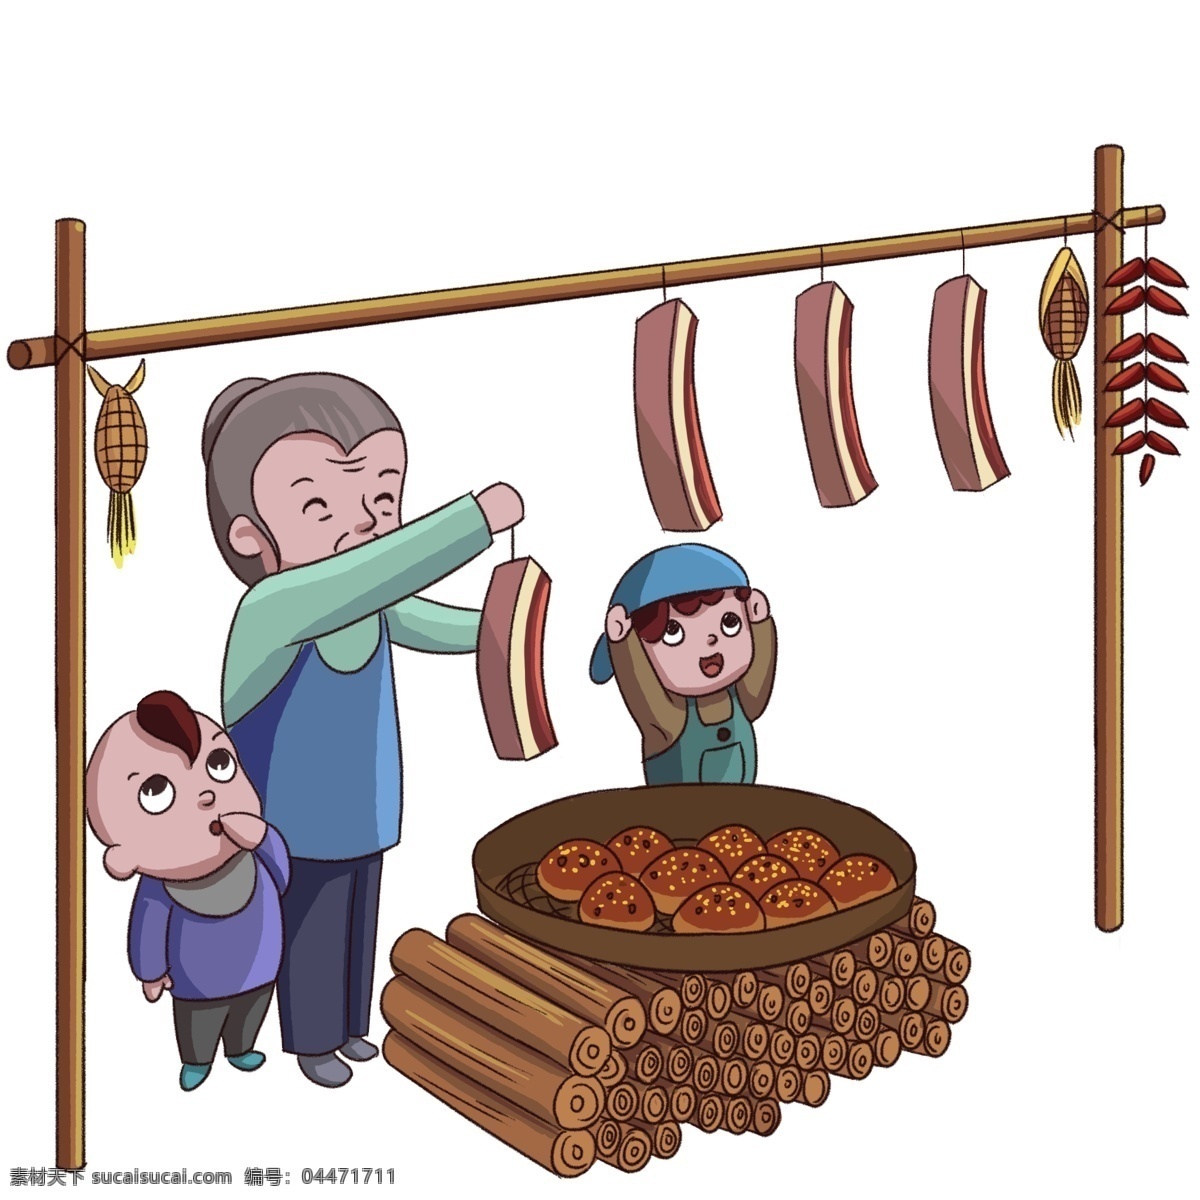 腊肉卡通图片 腊肉卡通 过年 晒腊肉 奶奶小朋友 手绘腊肉 年俗 插画